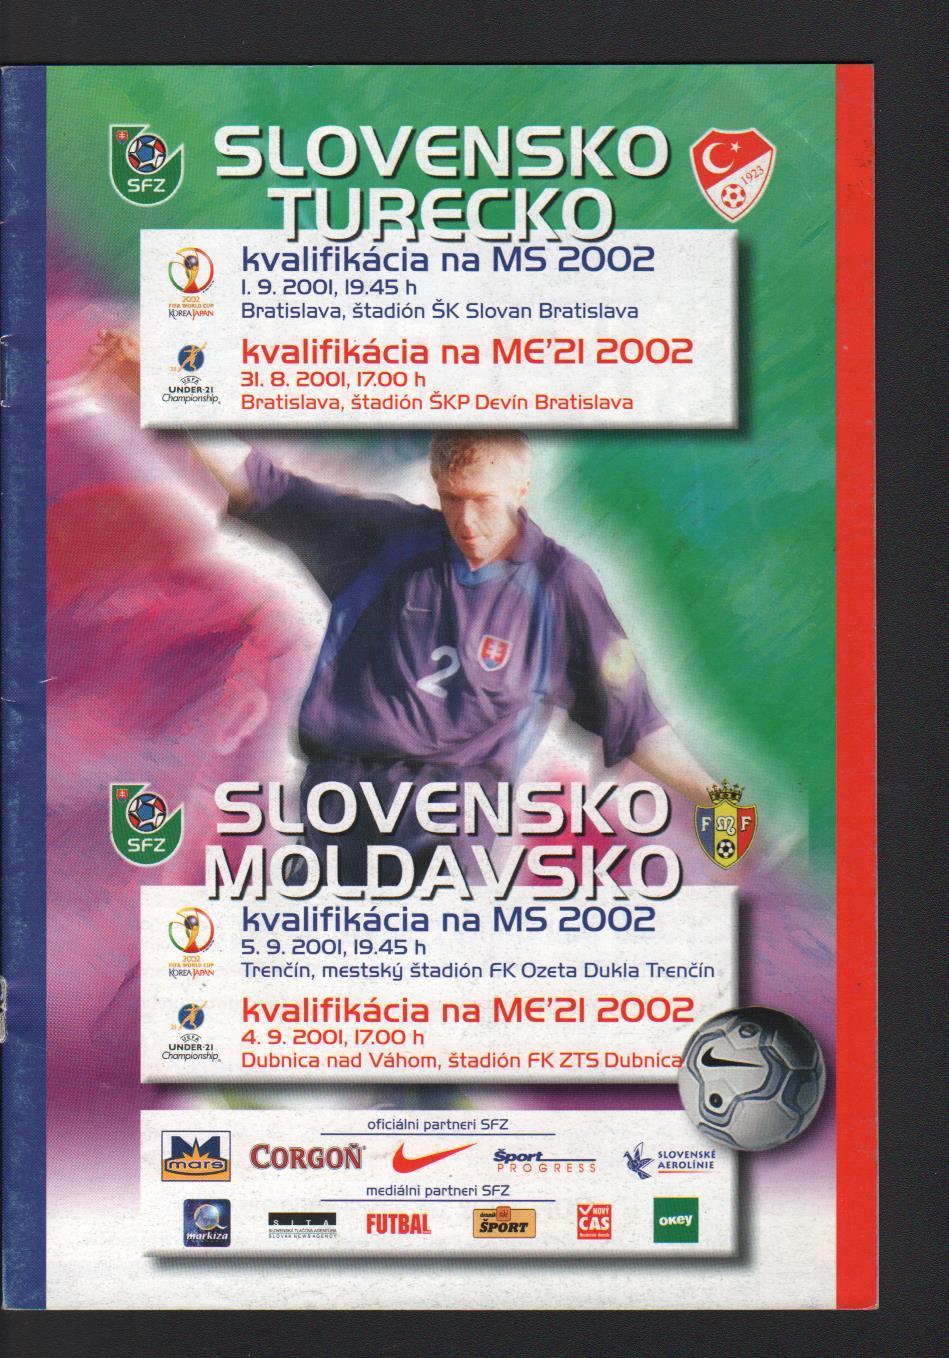 Словакия --- Турция и Молдавия. отборочные матчи к ЧМ-2002---сентябрь 2001